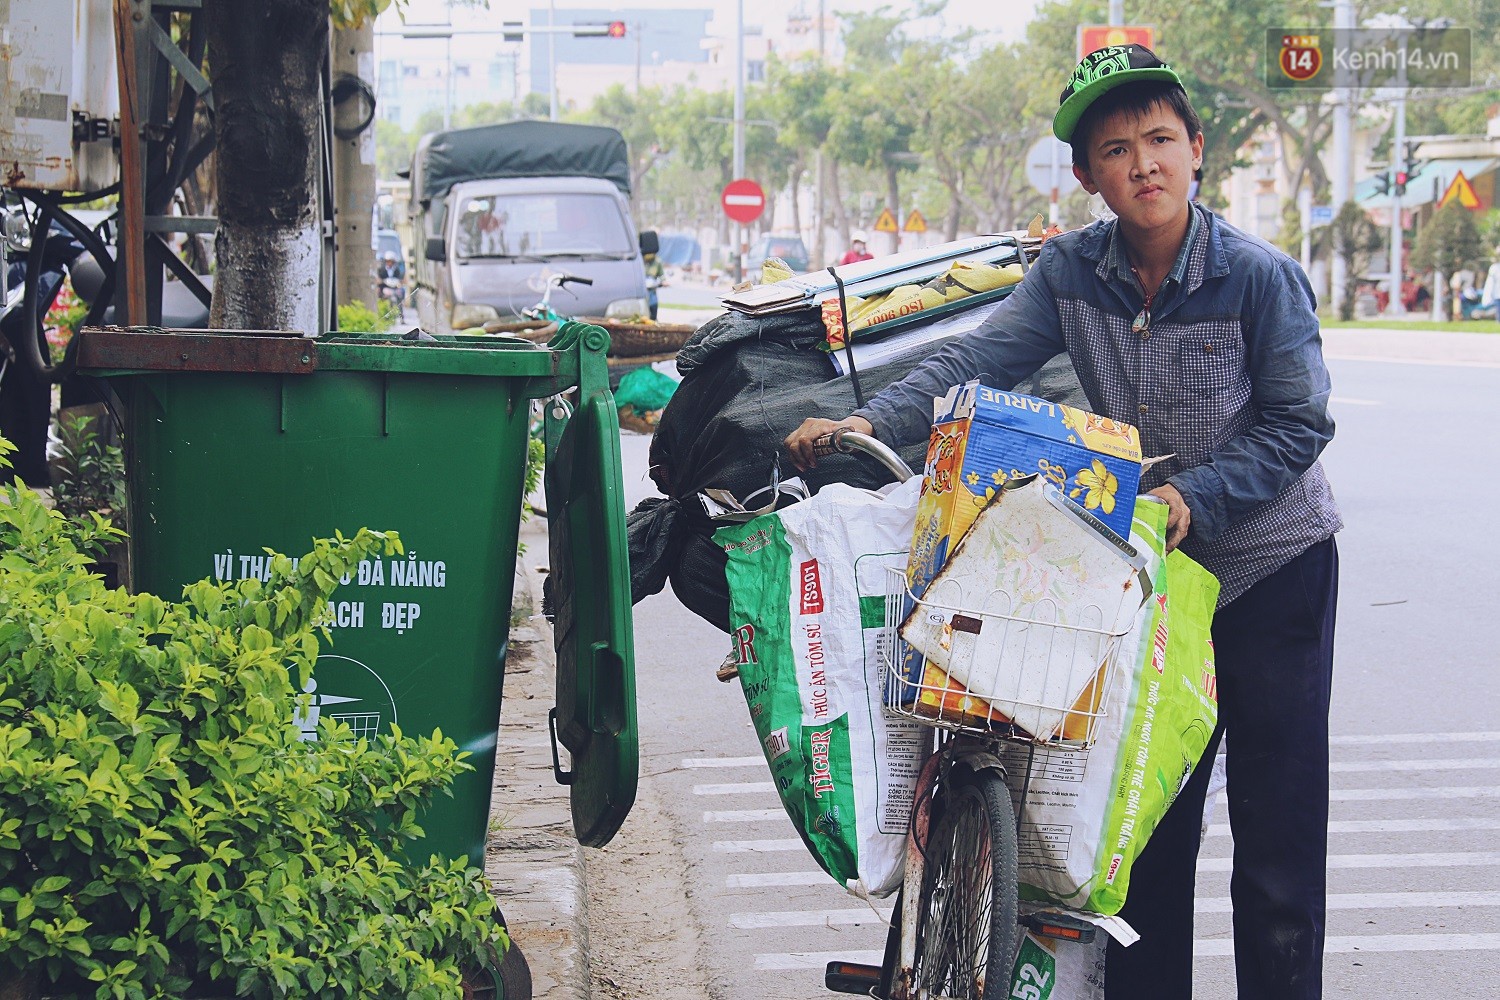 Chuyện của Thịnh: Cậu bé 16 tuổi ngày ngày nhặt rác trên đường phố ...